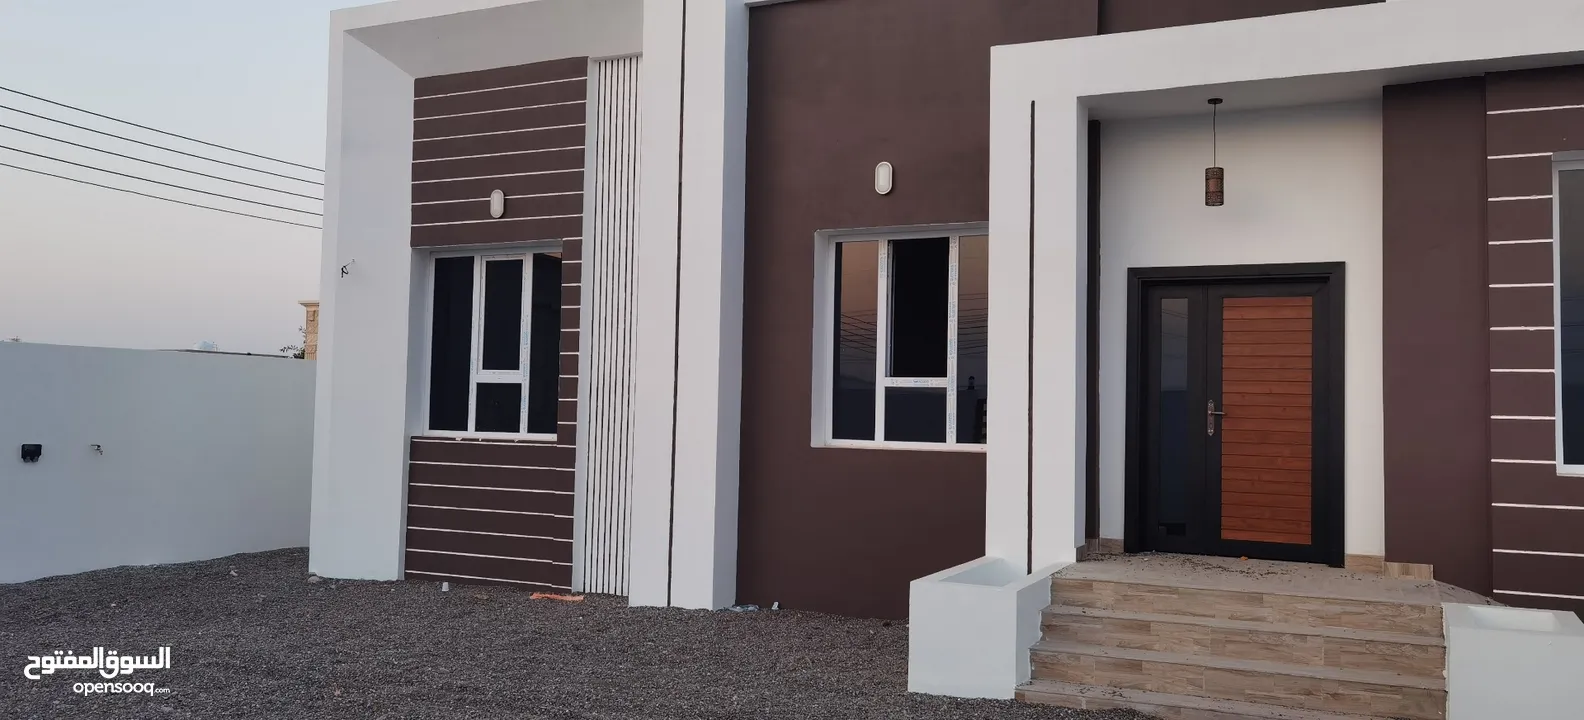 منزل جديد للبيع في مرتفعات حبراء جنب مسجد خالد بن الوليد